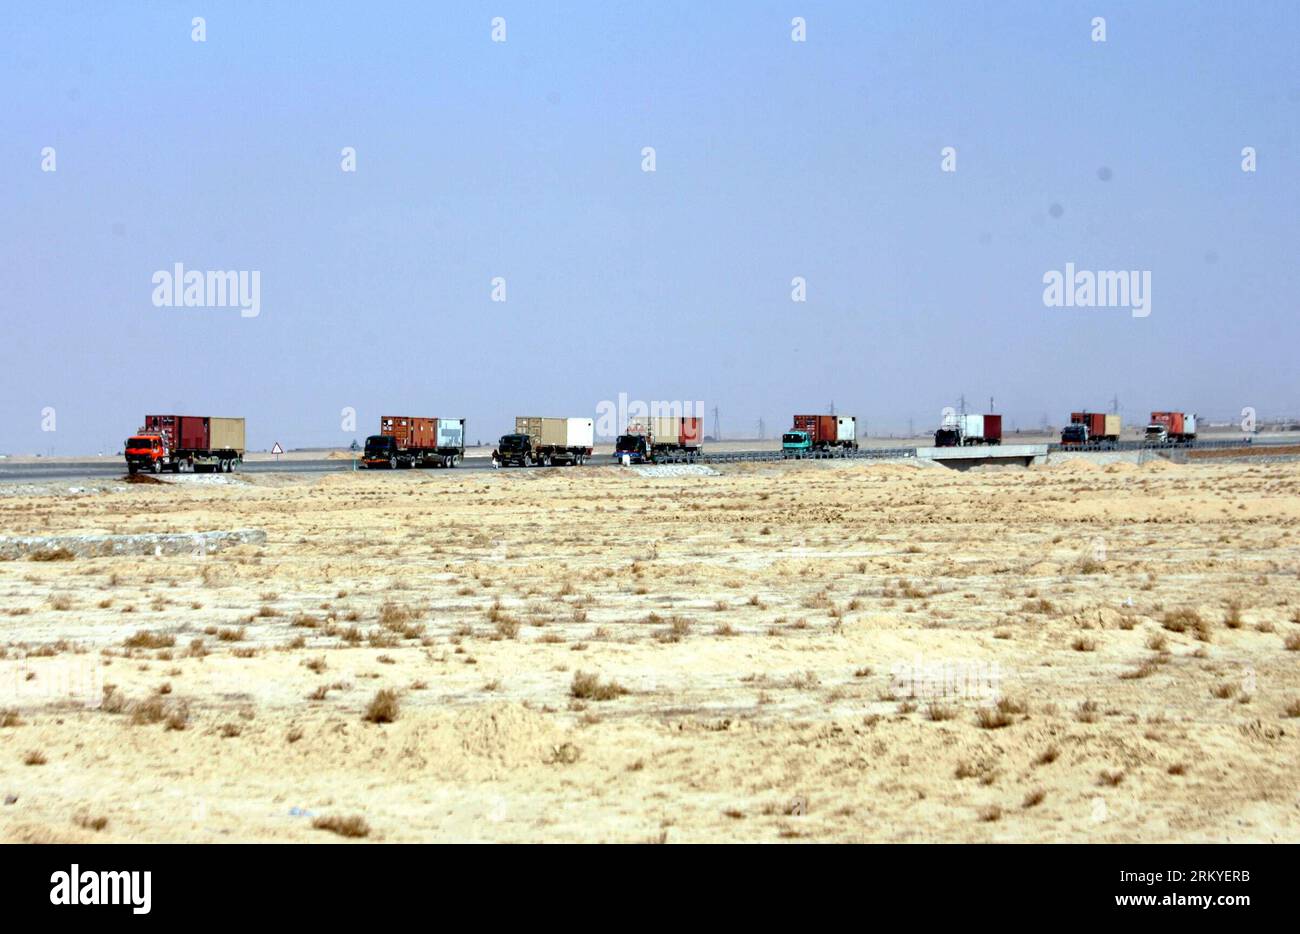 Bildnummer : 59211297 Datum : 12.02.2013 Copyright : imago/Xinhua QUETTA, 12 février 2013 - des camions d'approvisionnement de l'OTAN transportant des équipements de l'OTAN entrent à Quetta, dans le sud-ouest du Pakistan, le 12 février 2013. Les États-Unis disent qu'ils ont commencé à utiliser la route terrestre à travers le Pakistan pour retirer l'équipement militaire américain d'Afghanistan. (Xinhua photo/Mohammad)(bxy) PAKISTAN-QUETTA-US MILITARY-SEVRAGE PUBLICATIONxNOTxINxCHN Gesellschaft Nato transport Truck Logistik LKW x0x xdd 2013 quer 59211297 Date 12 02 2013 Copyright Imago XINHUA Quetta fév 12 2013 des camions d'approvisionnement de l'OTAN transportant des équipements de l'OTAN entrent dans Quetta Southw Banque D'Images